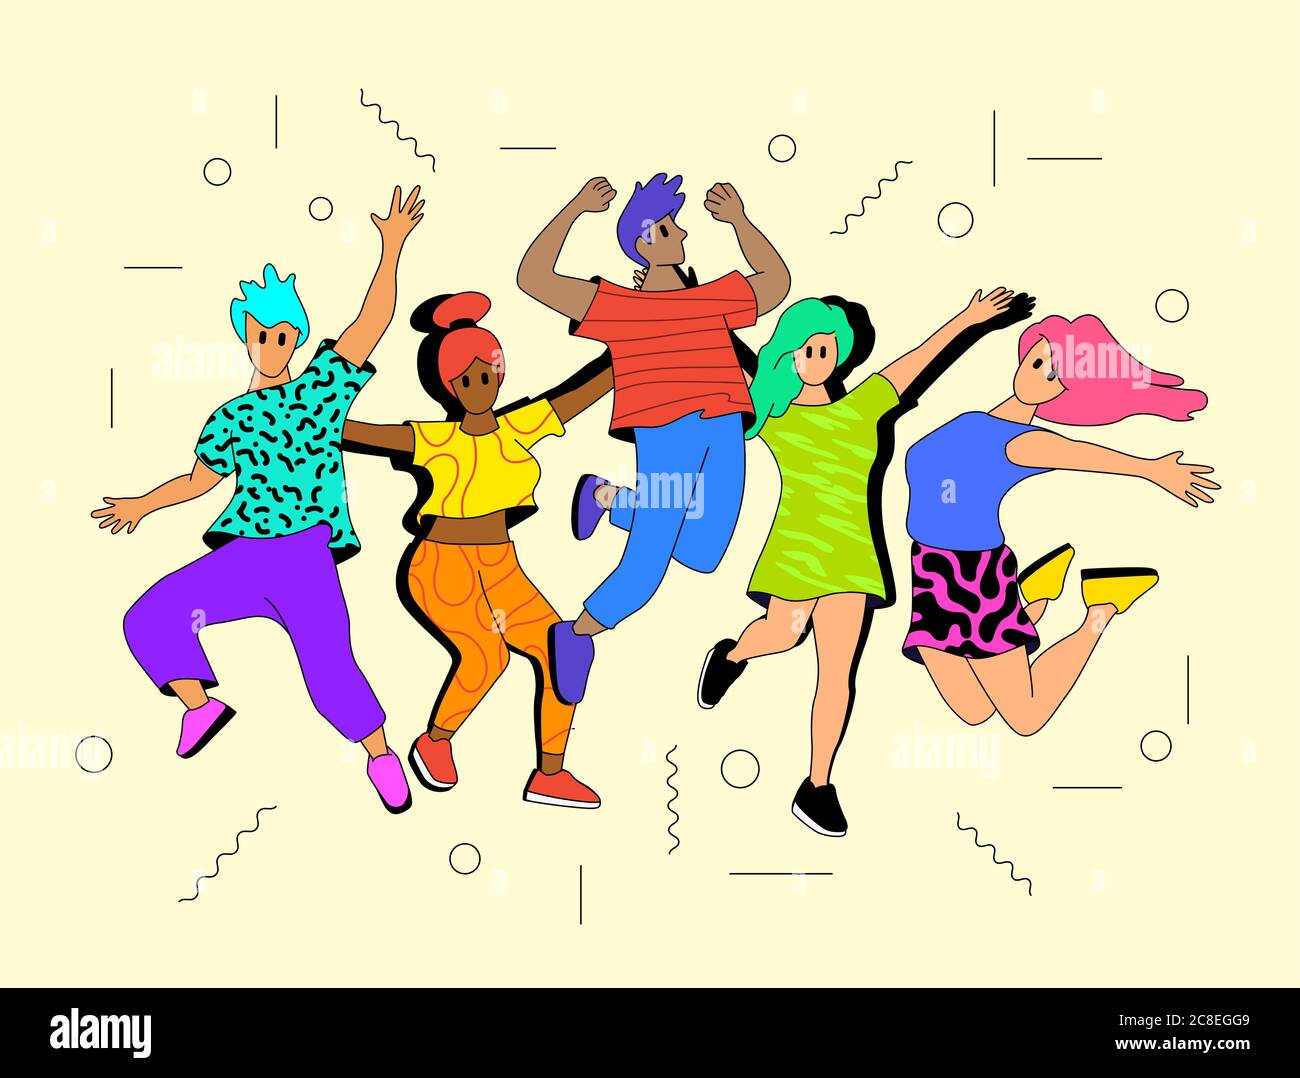 Giovani, persone felici e vibranti che saltano in aria. Illustrazione vettoriale dei personaggi sani e di successo Illustrazione Vettoriale